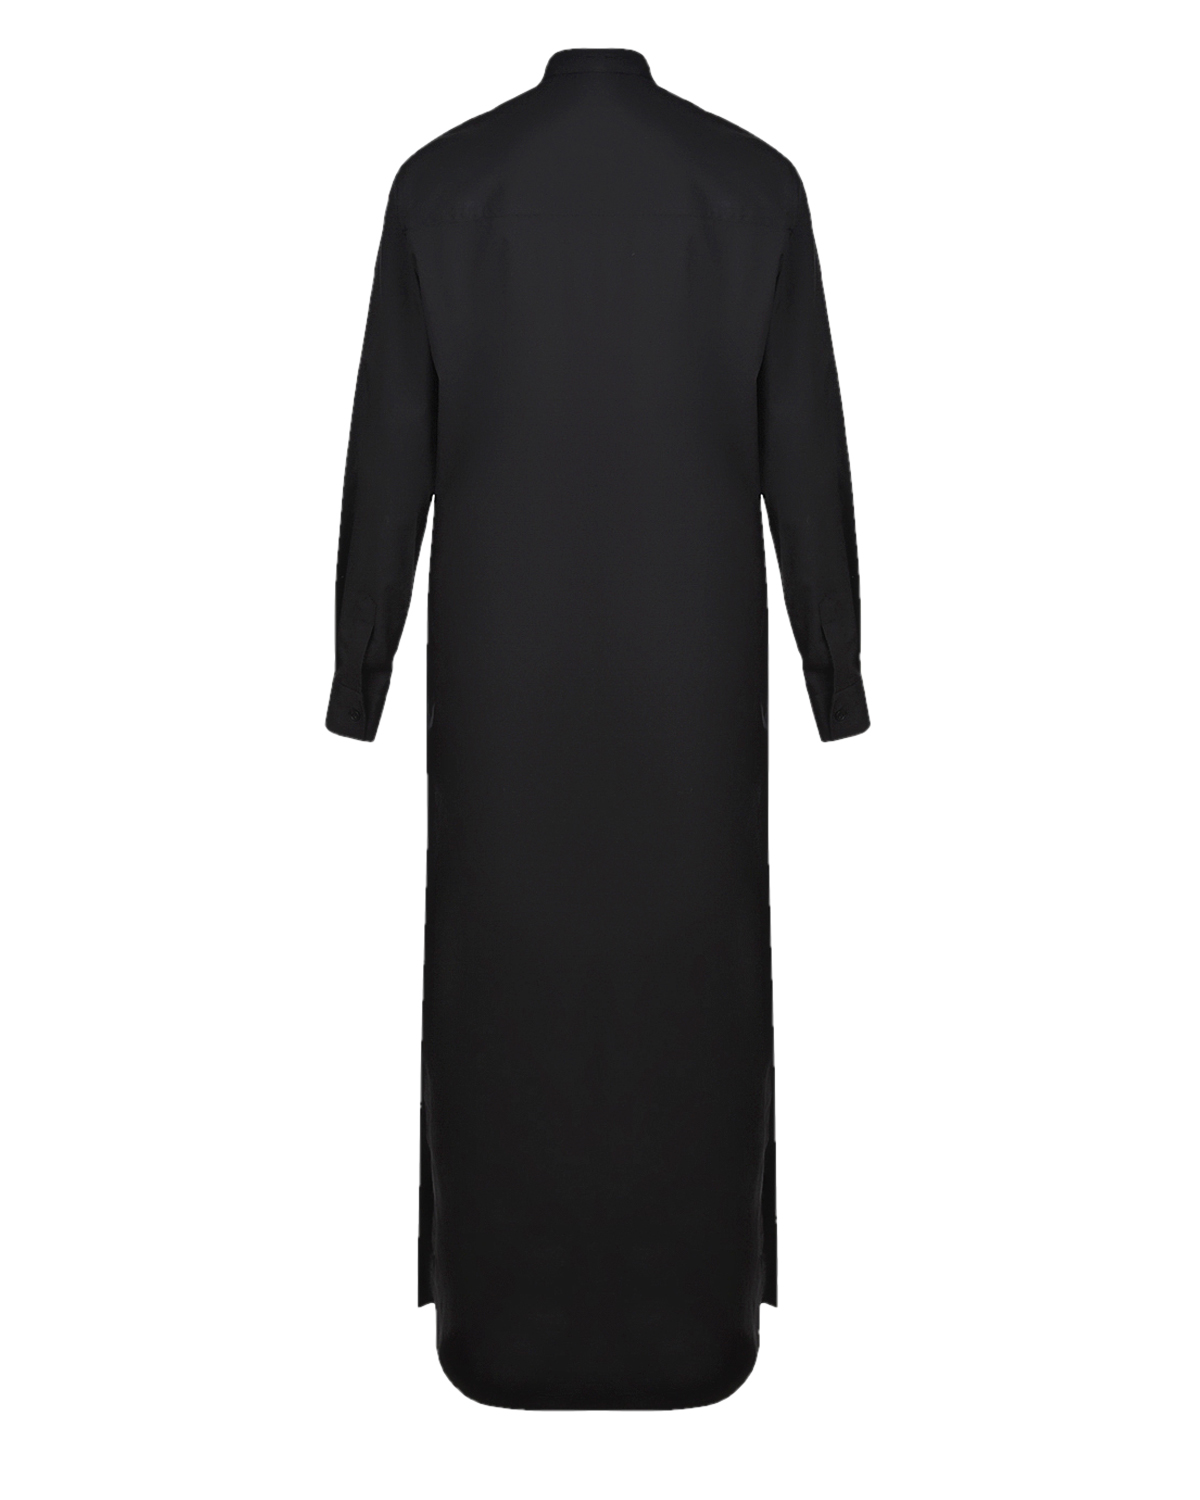 Черное платье с принтом "пальма" Stella Jean, размер 40, цвет черный - фото 2